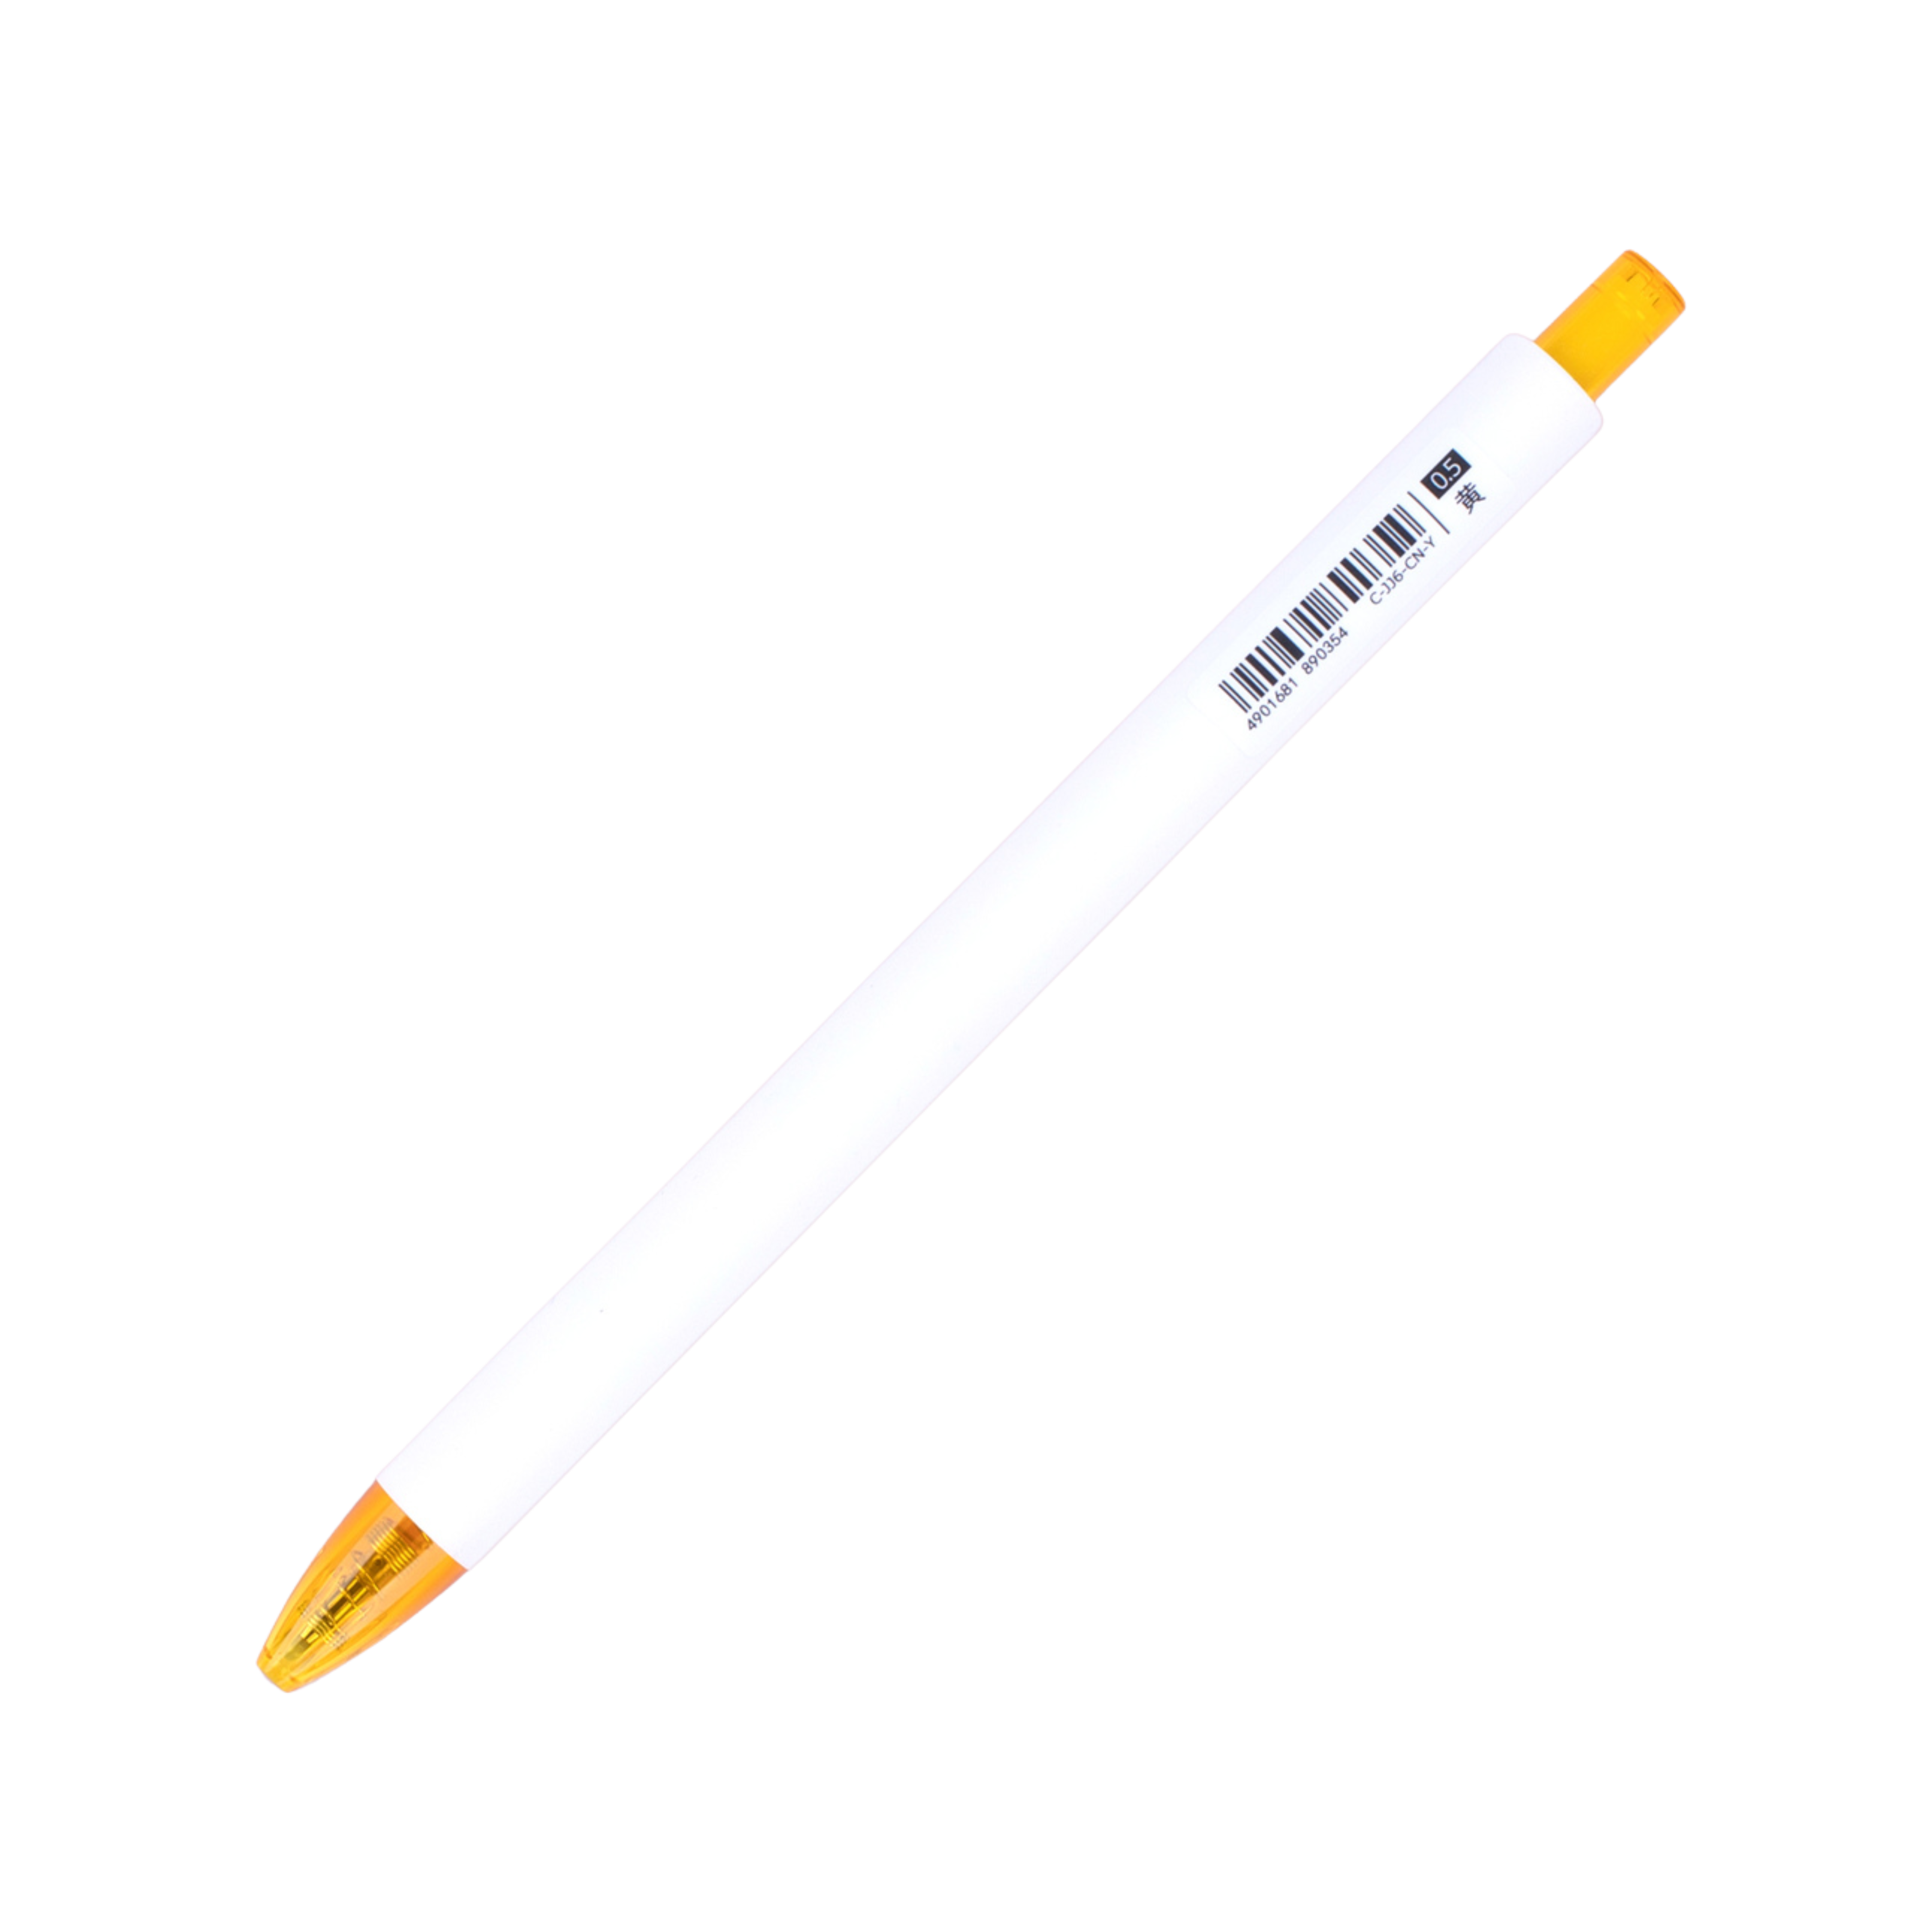 Zebra Rainbow Retractable Gel Pen 0.5mm - Yellow